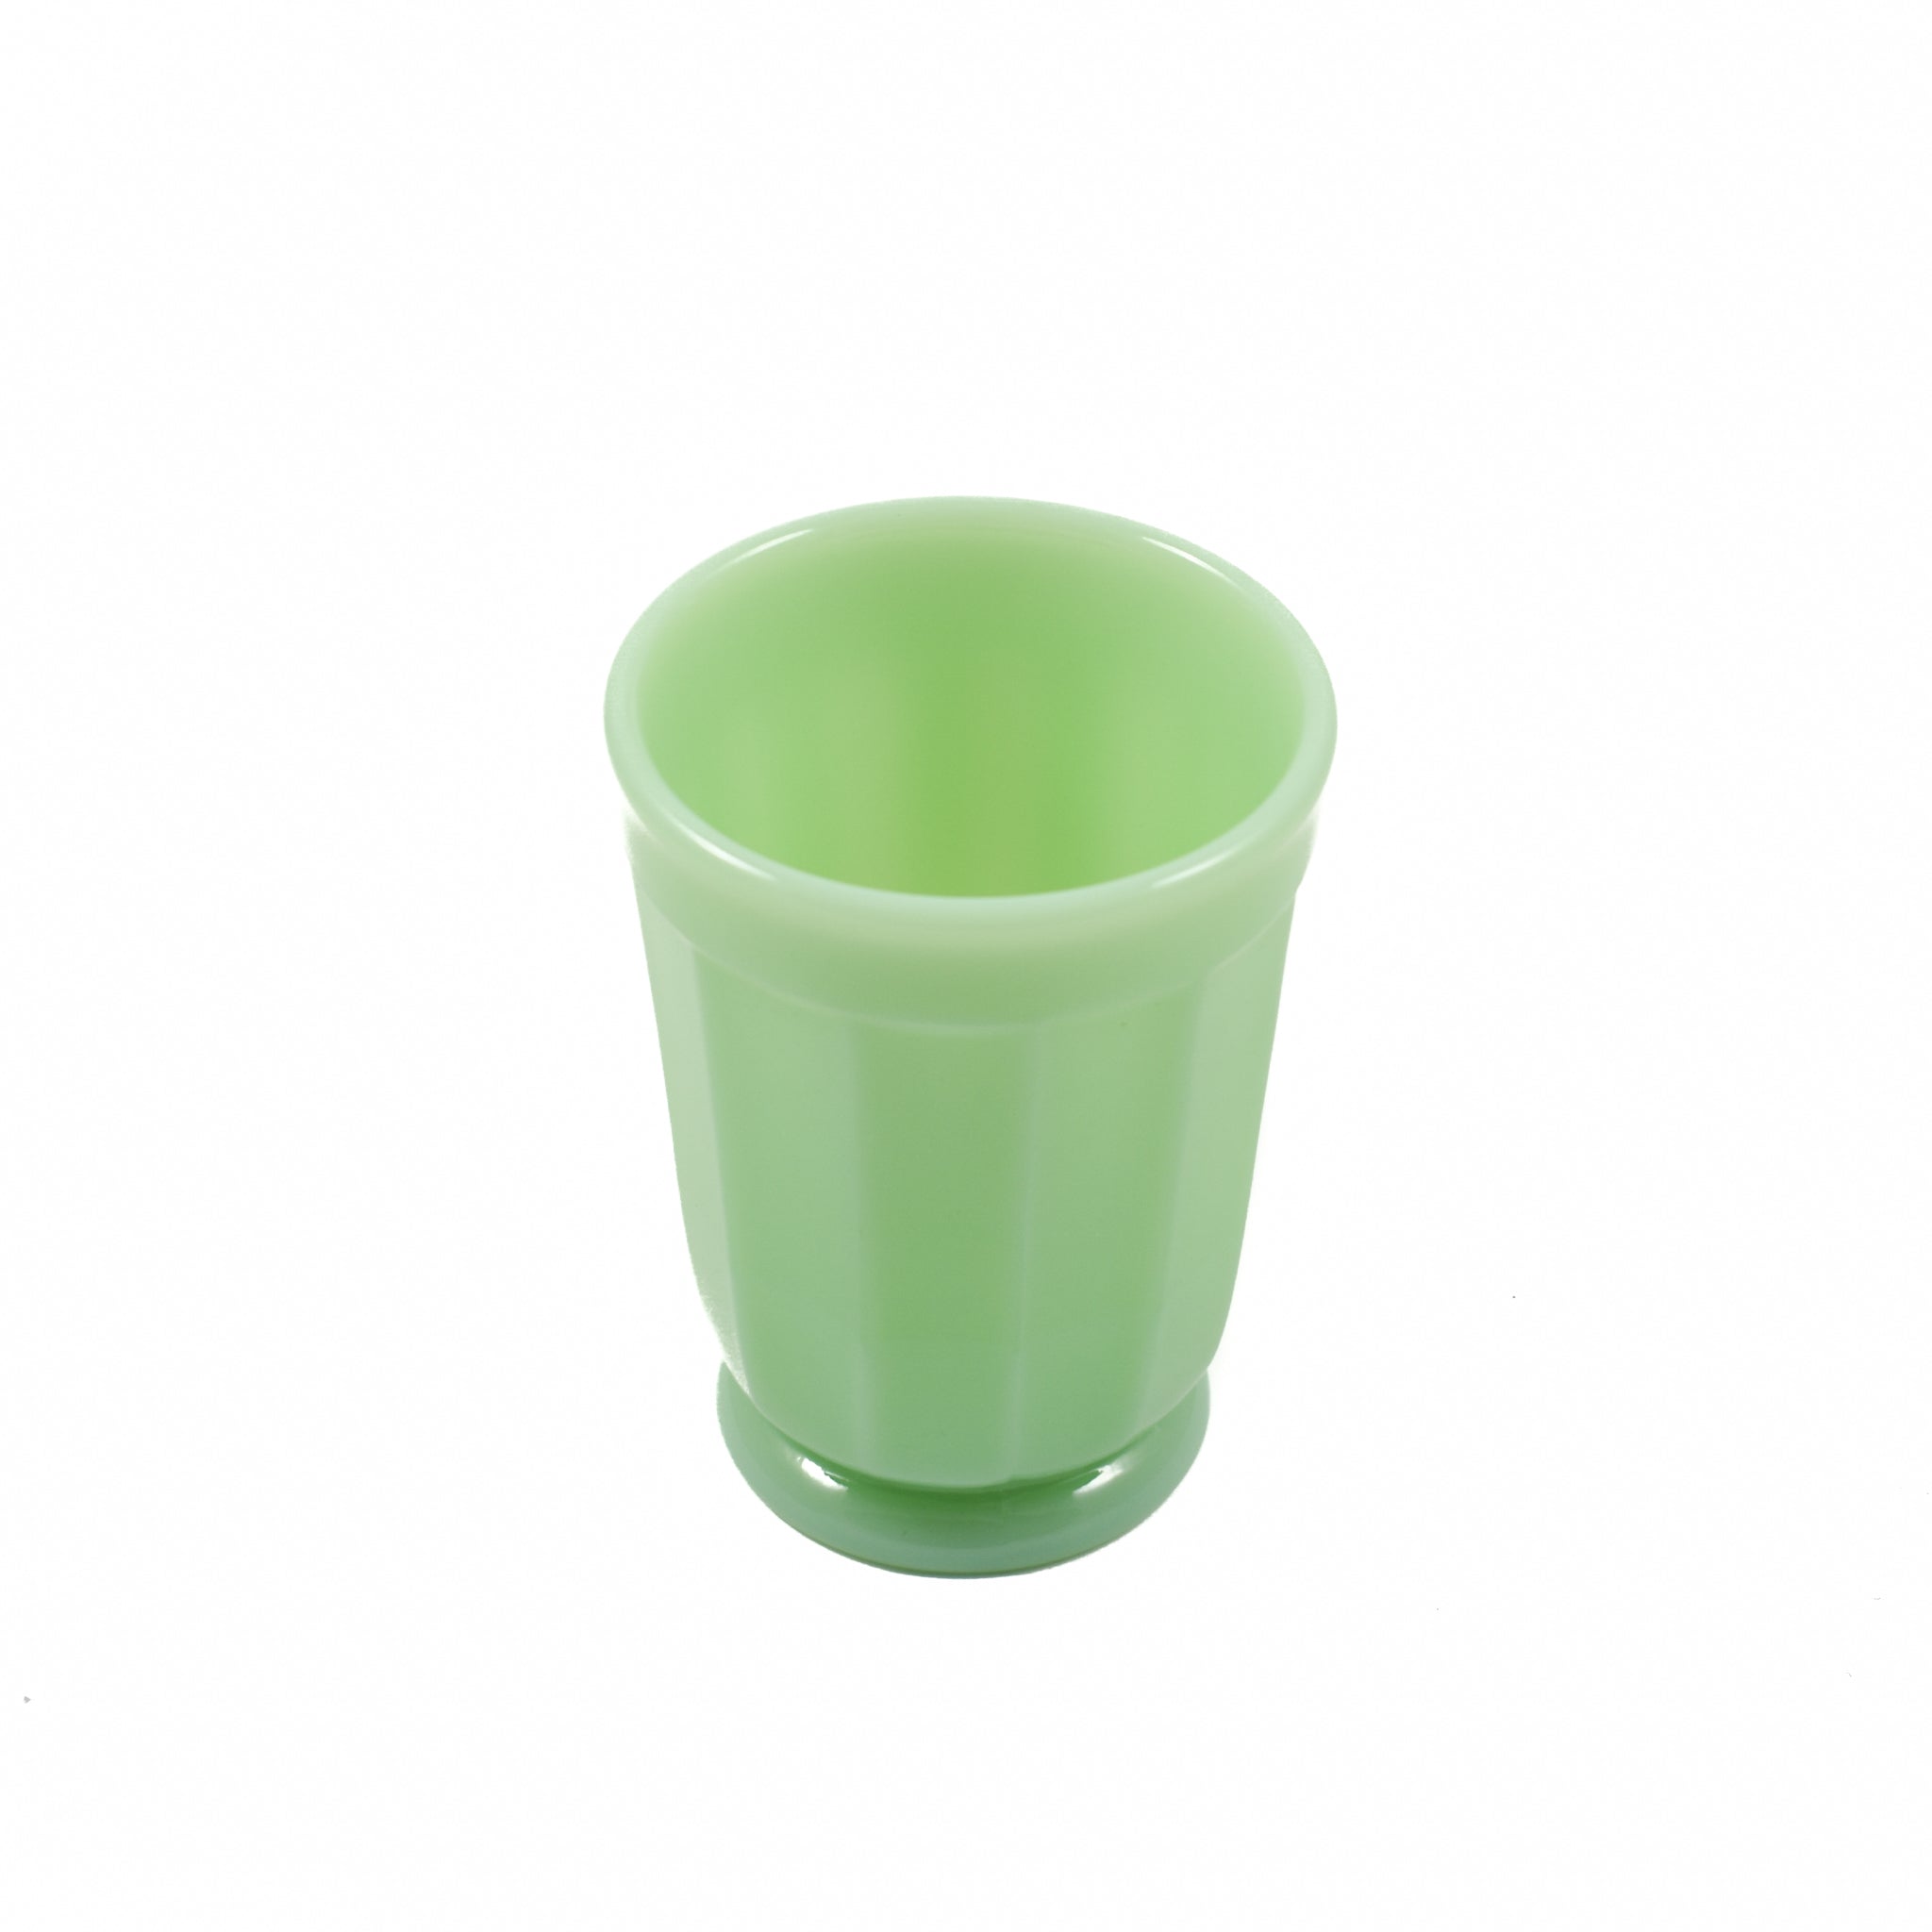 Mosser Glass Jade Milk Glass Tumbler Tableware Jugs & Glassware